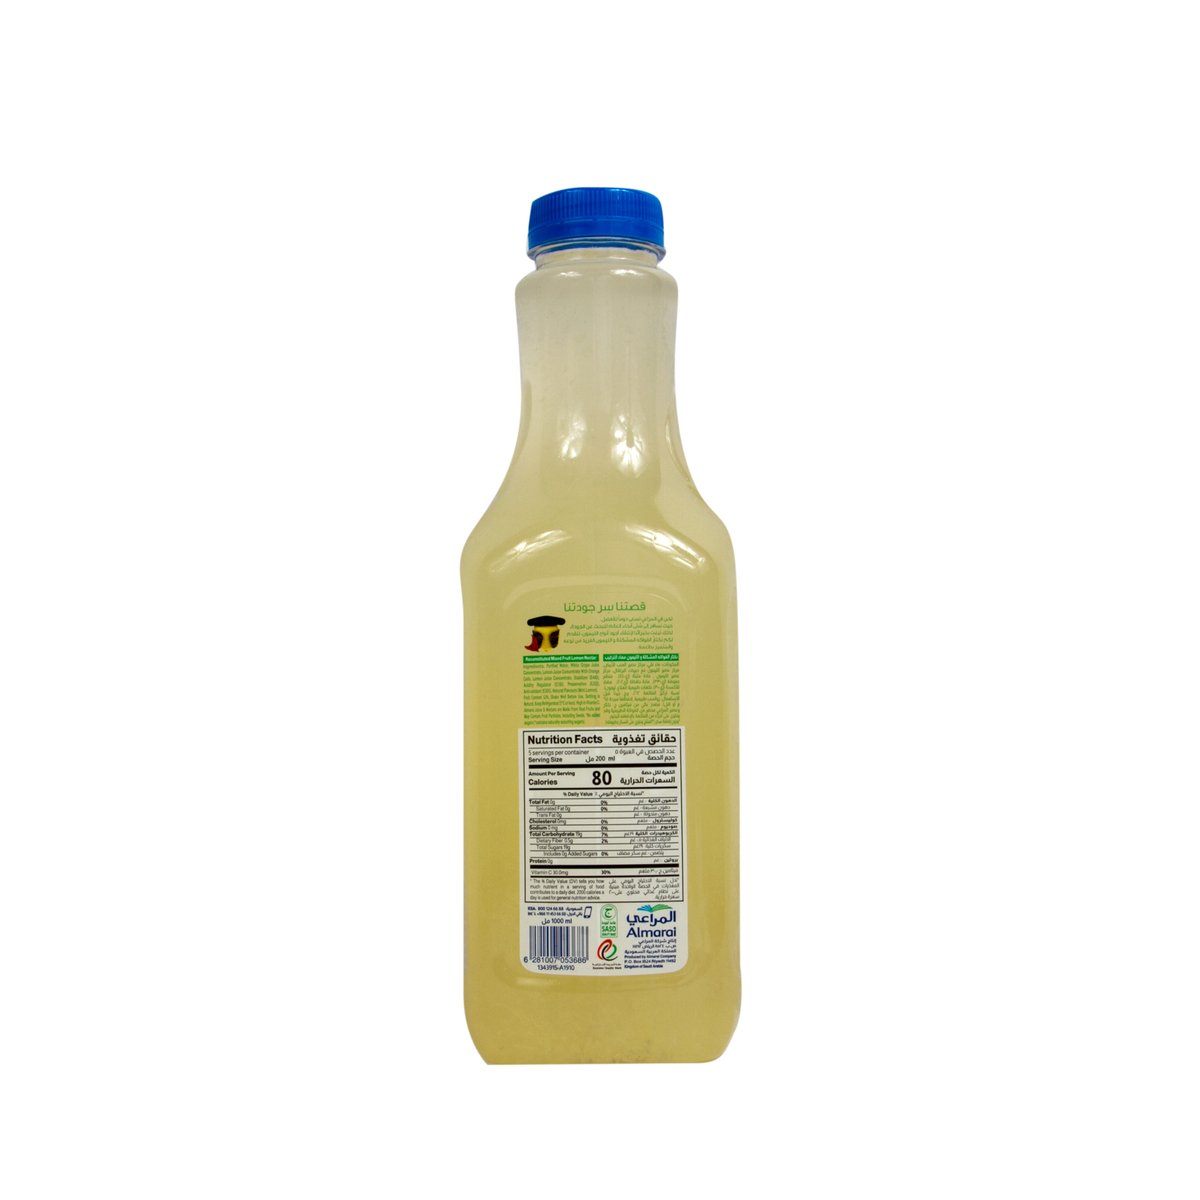 Almarai Mixed Fruit Lemon Juice With Pulp 1 Litre